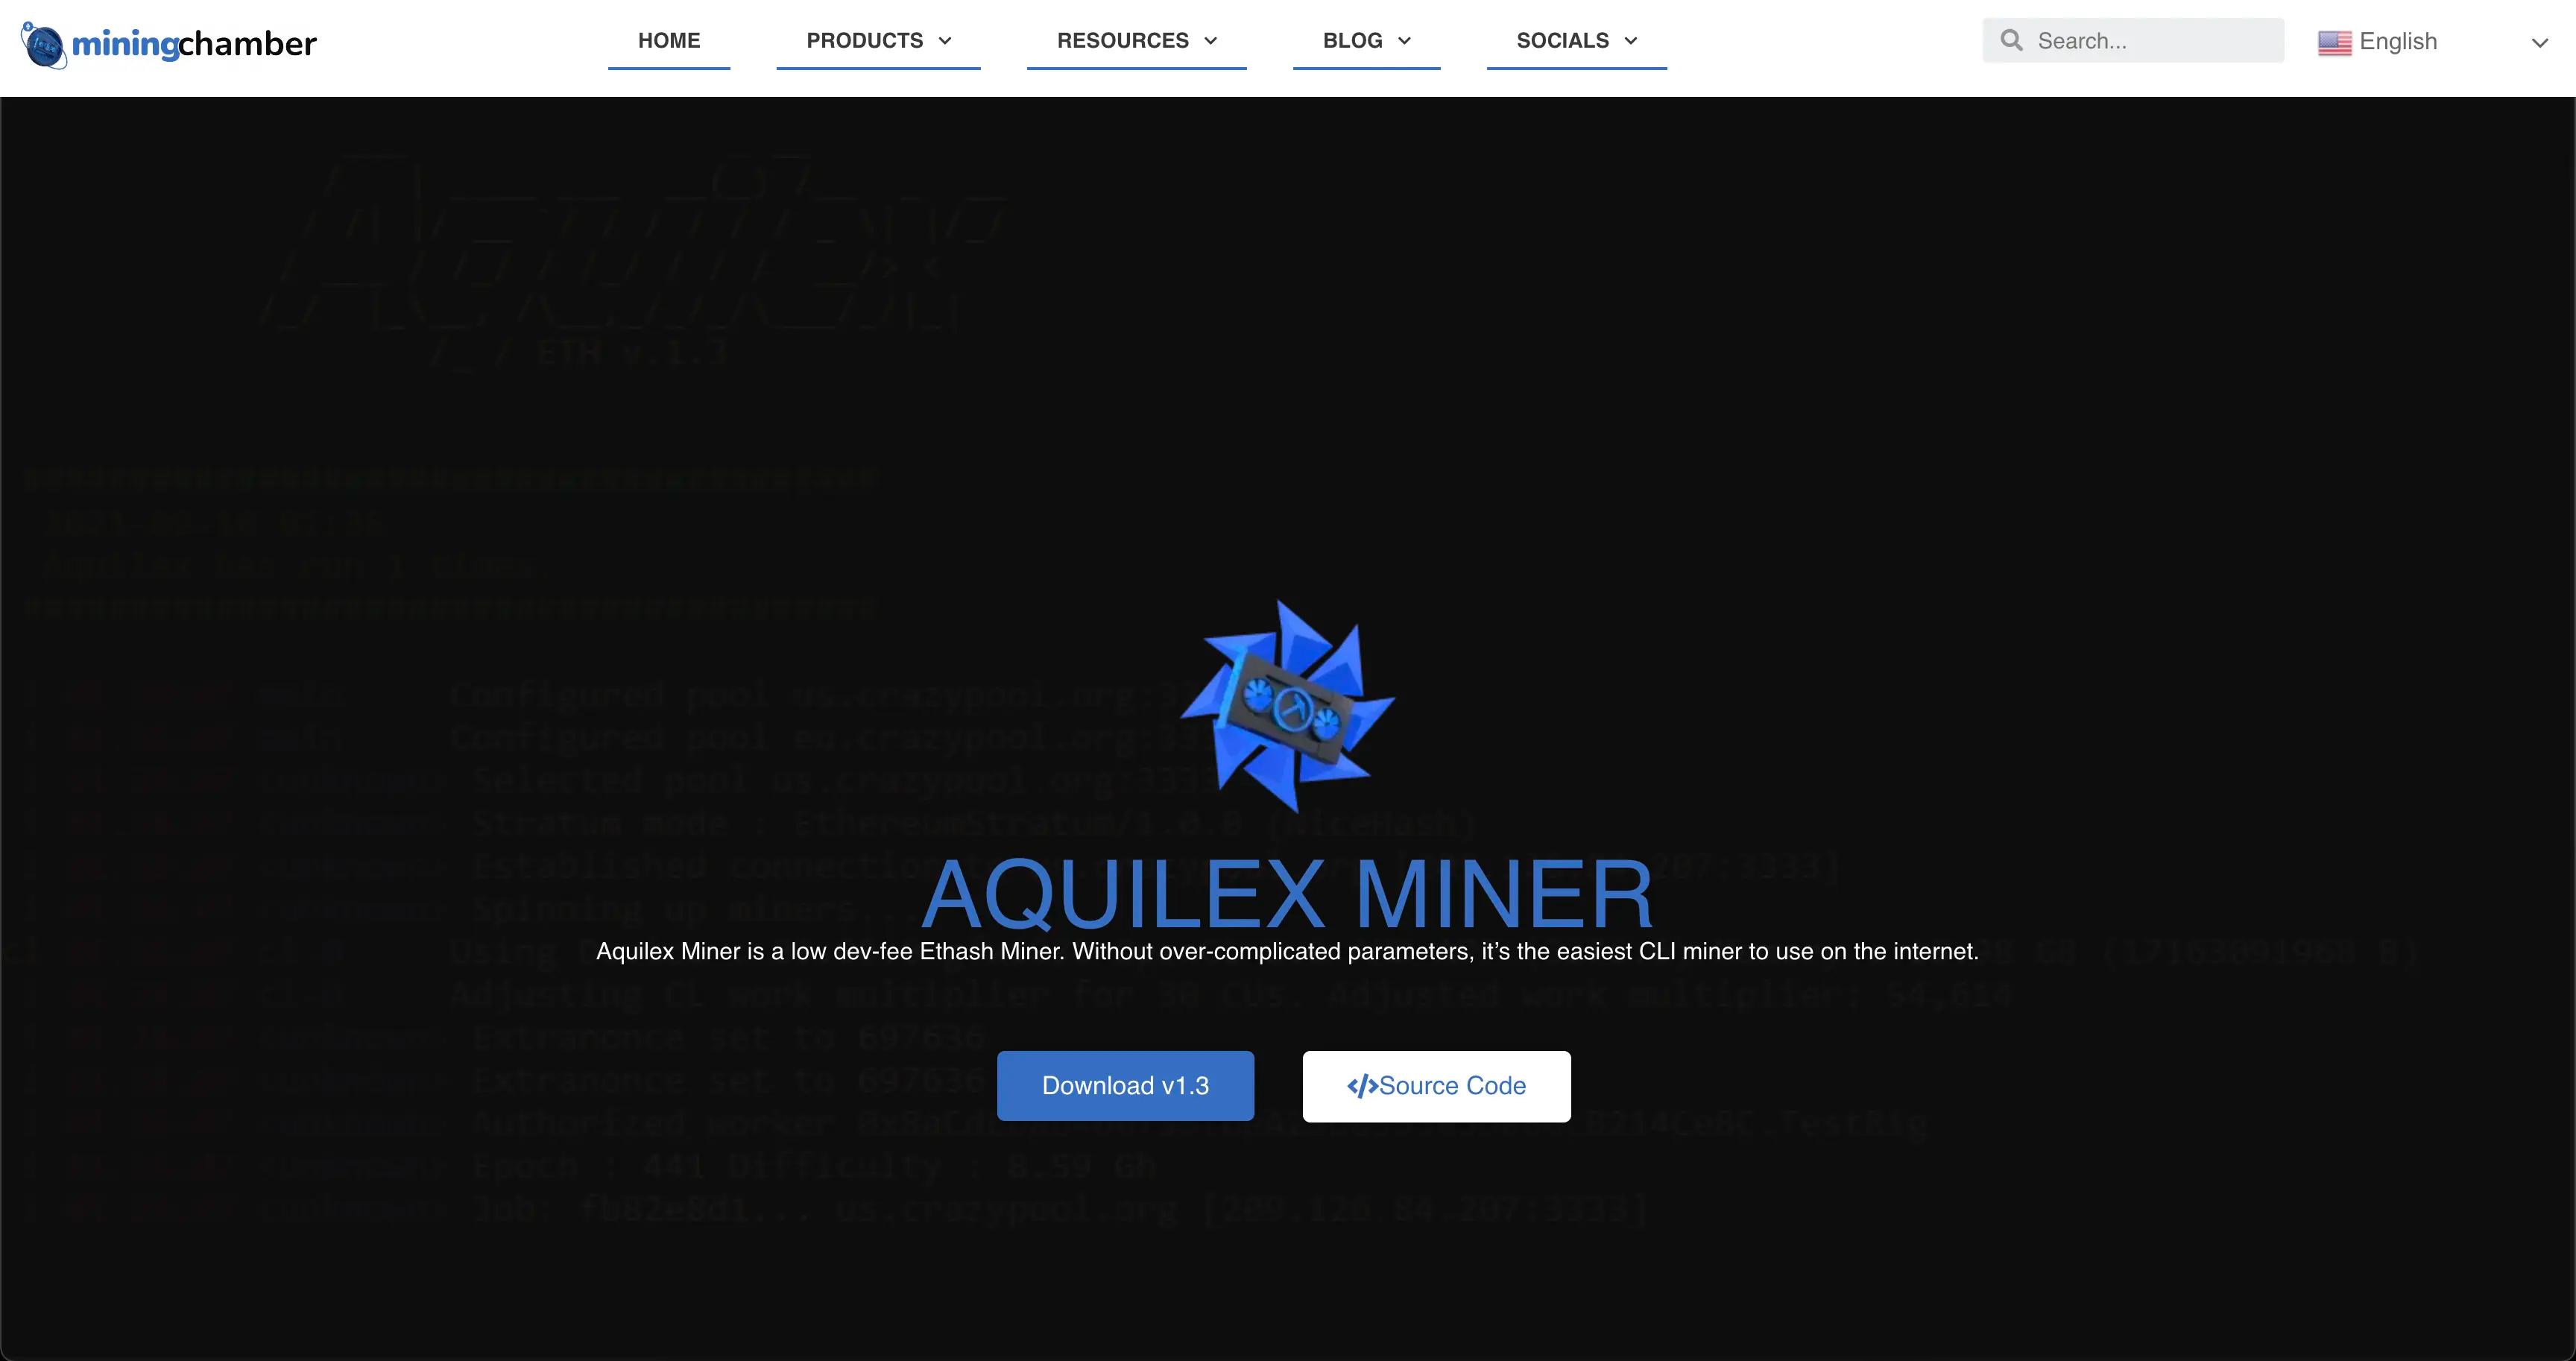 Aquilex Miner